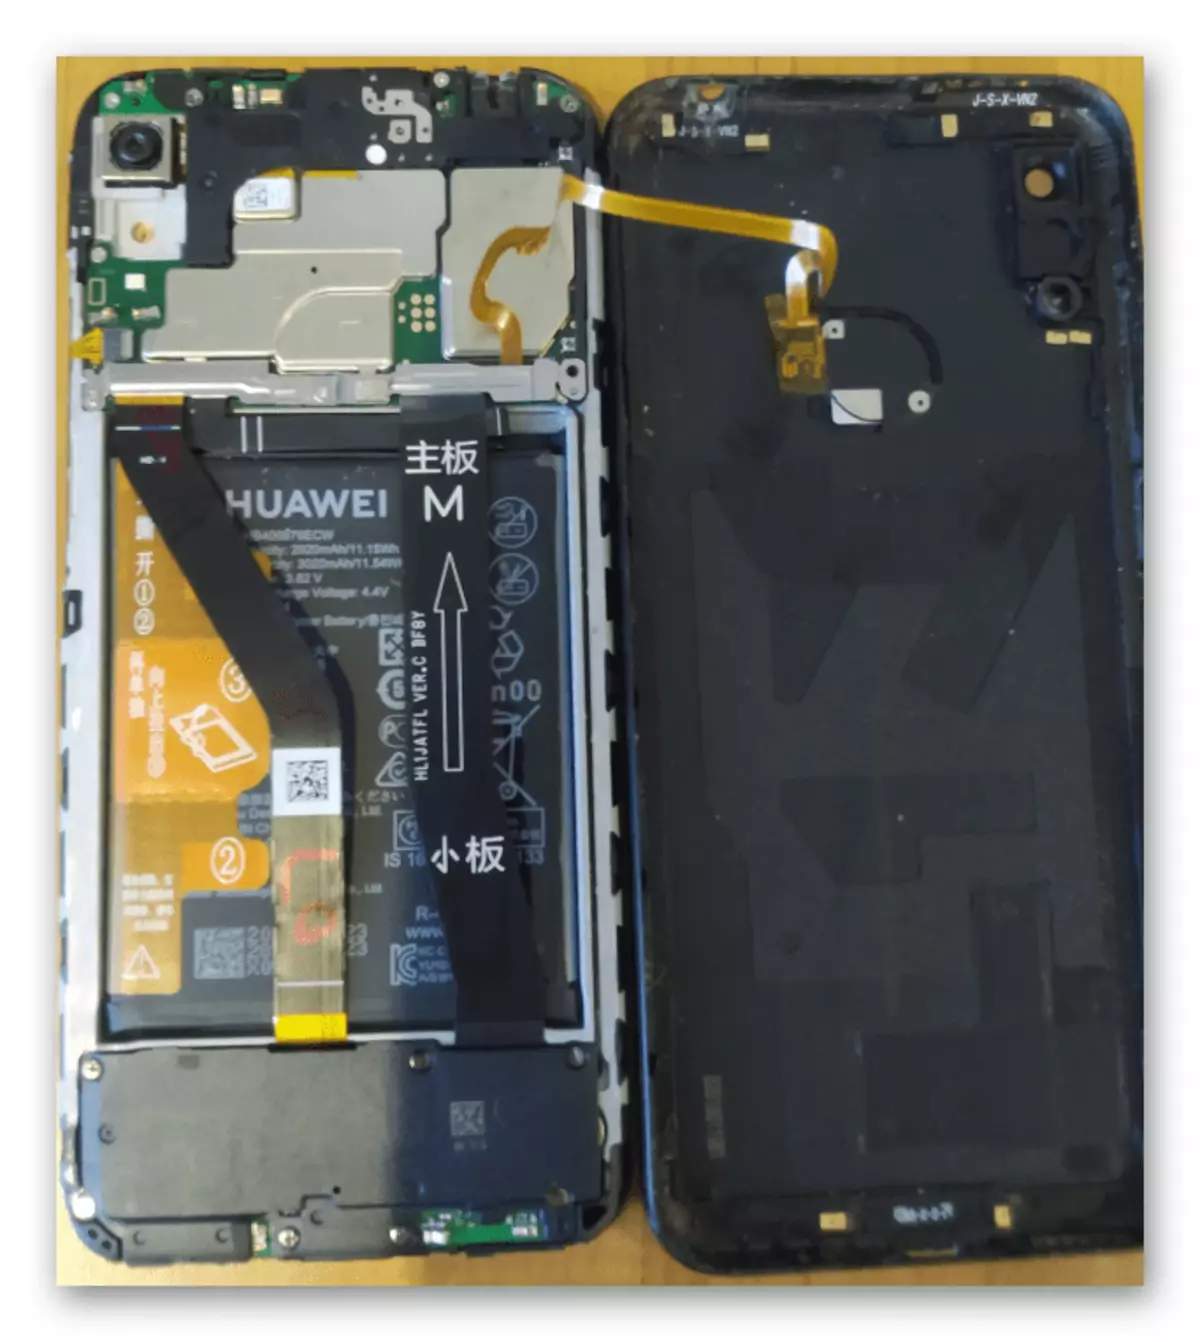 Huawei čast 8a uklanjanje stražnjeg poklopca uređaja za pristup testovima kada vrišti